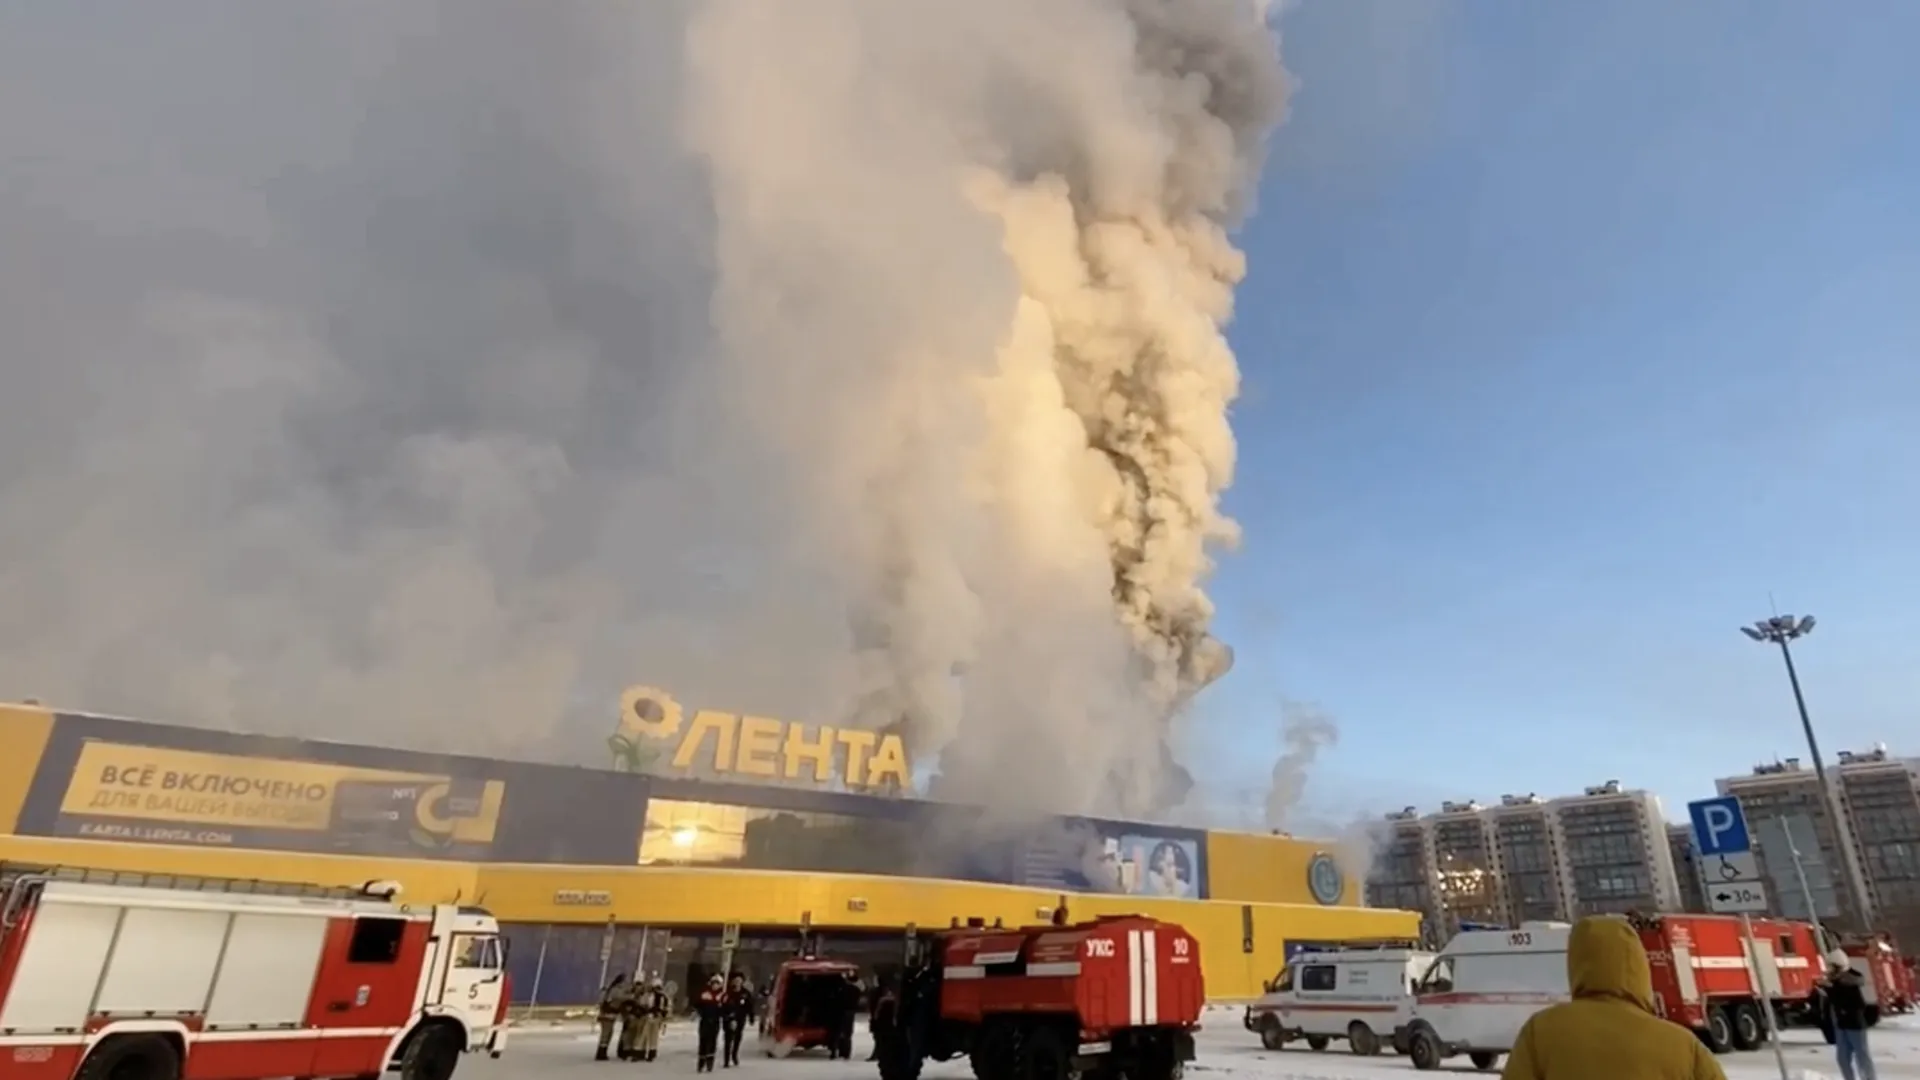 Недовольный сотрудник уничтожил огромный магазин. Главное о пожаре в «Ленте»